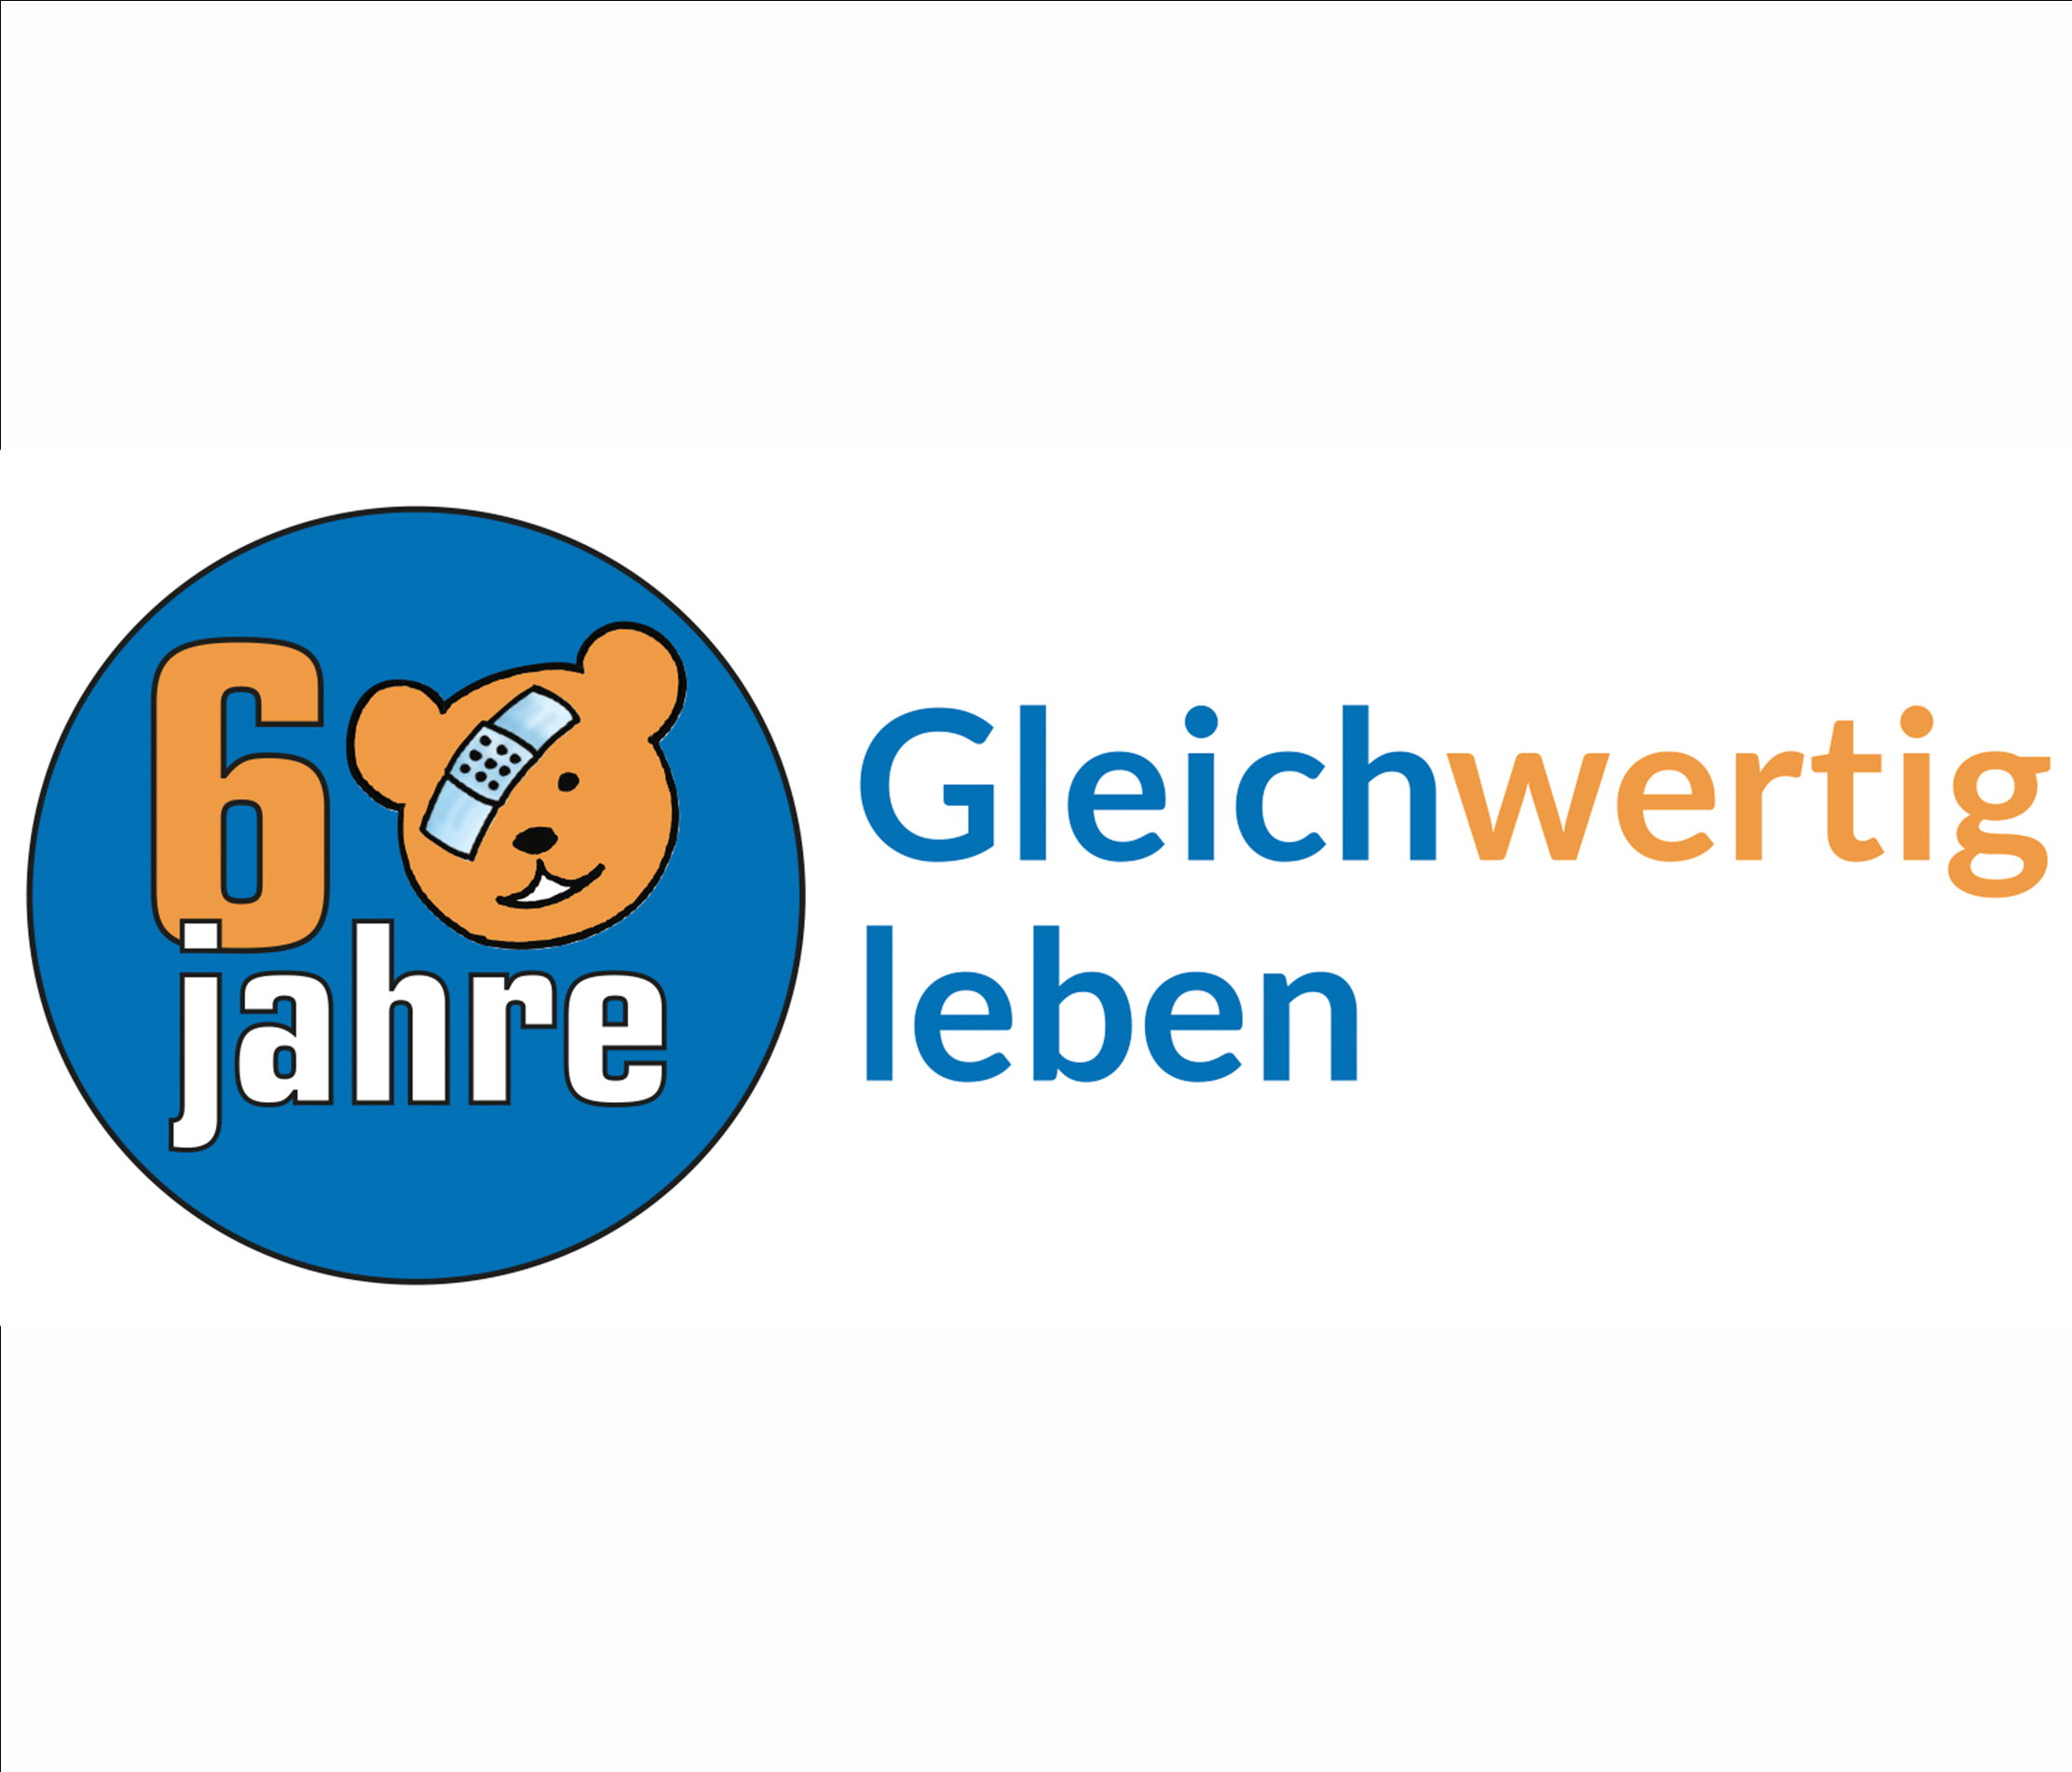 60 Jahre Stiftung visoparents - Gleichwertig leben